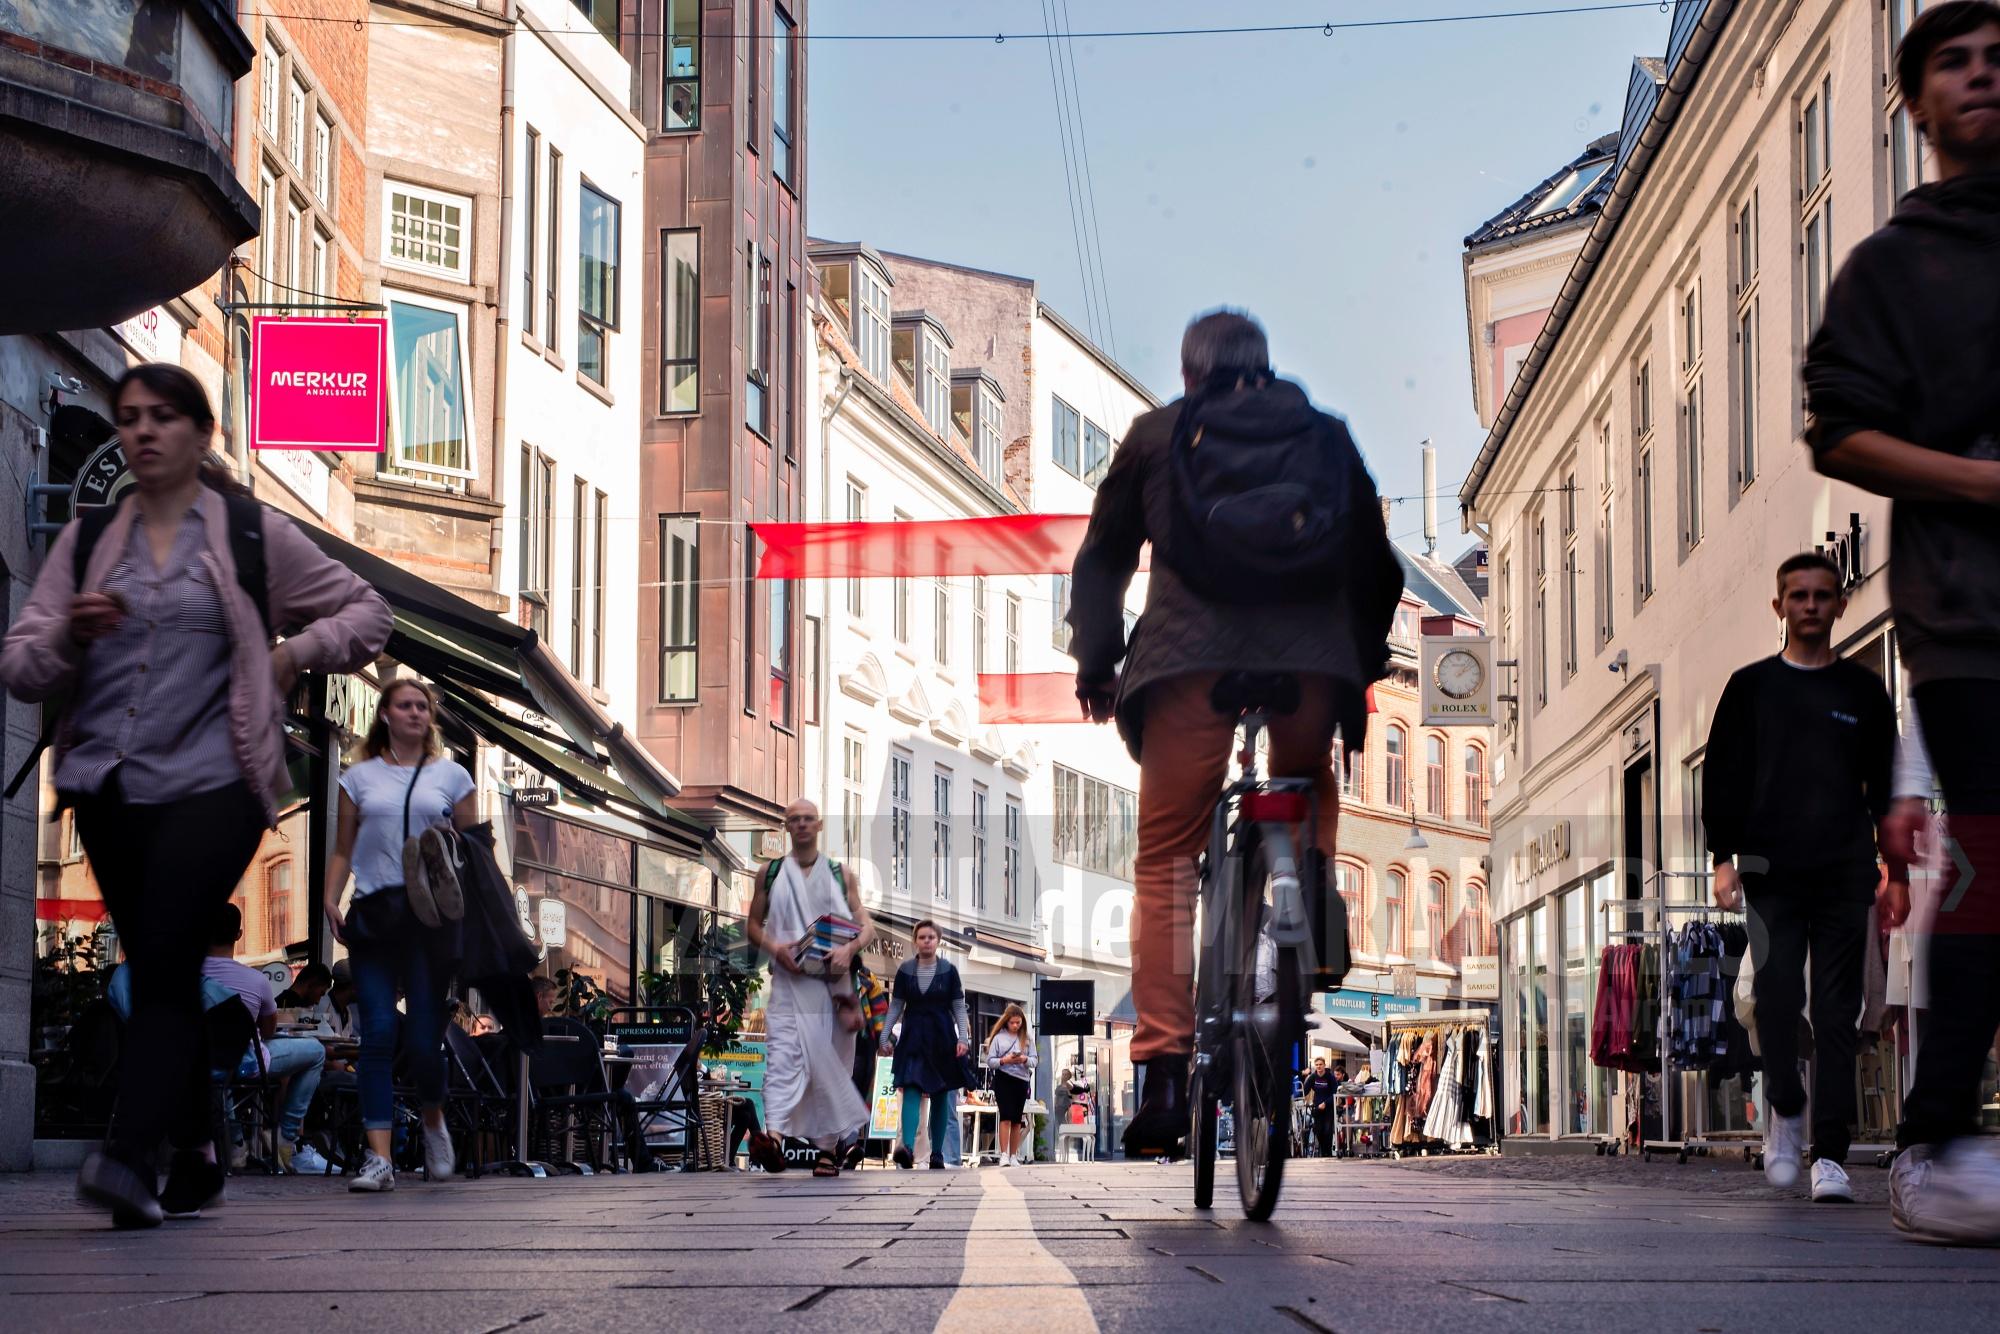 Danemarca a ridicat ultima restricție legată de pandemie